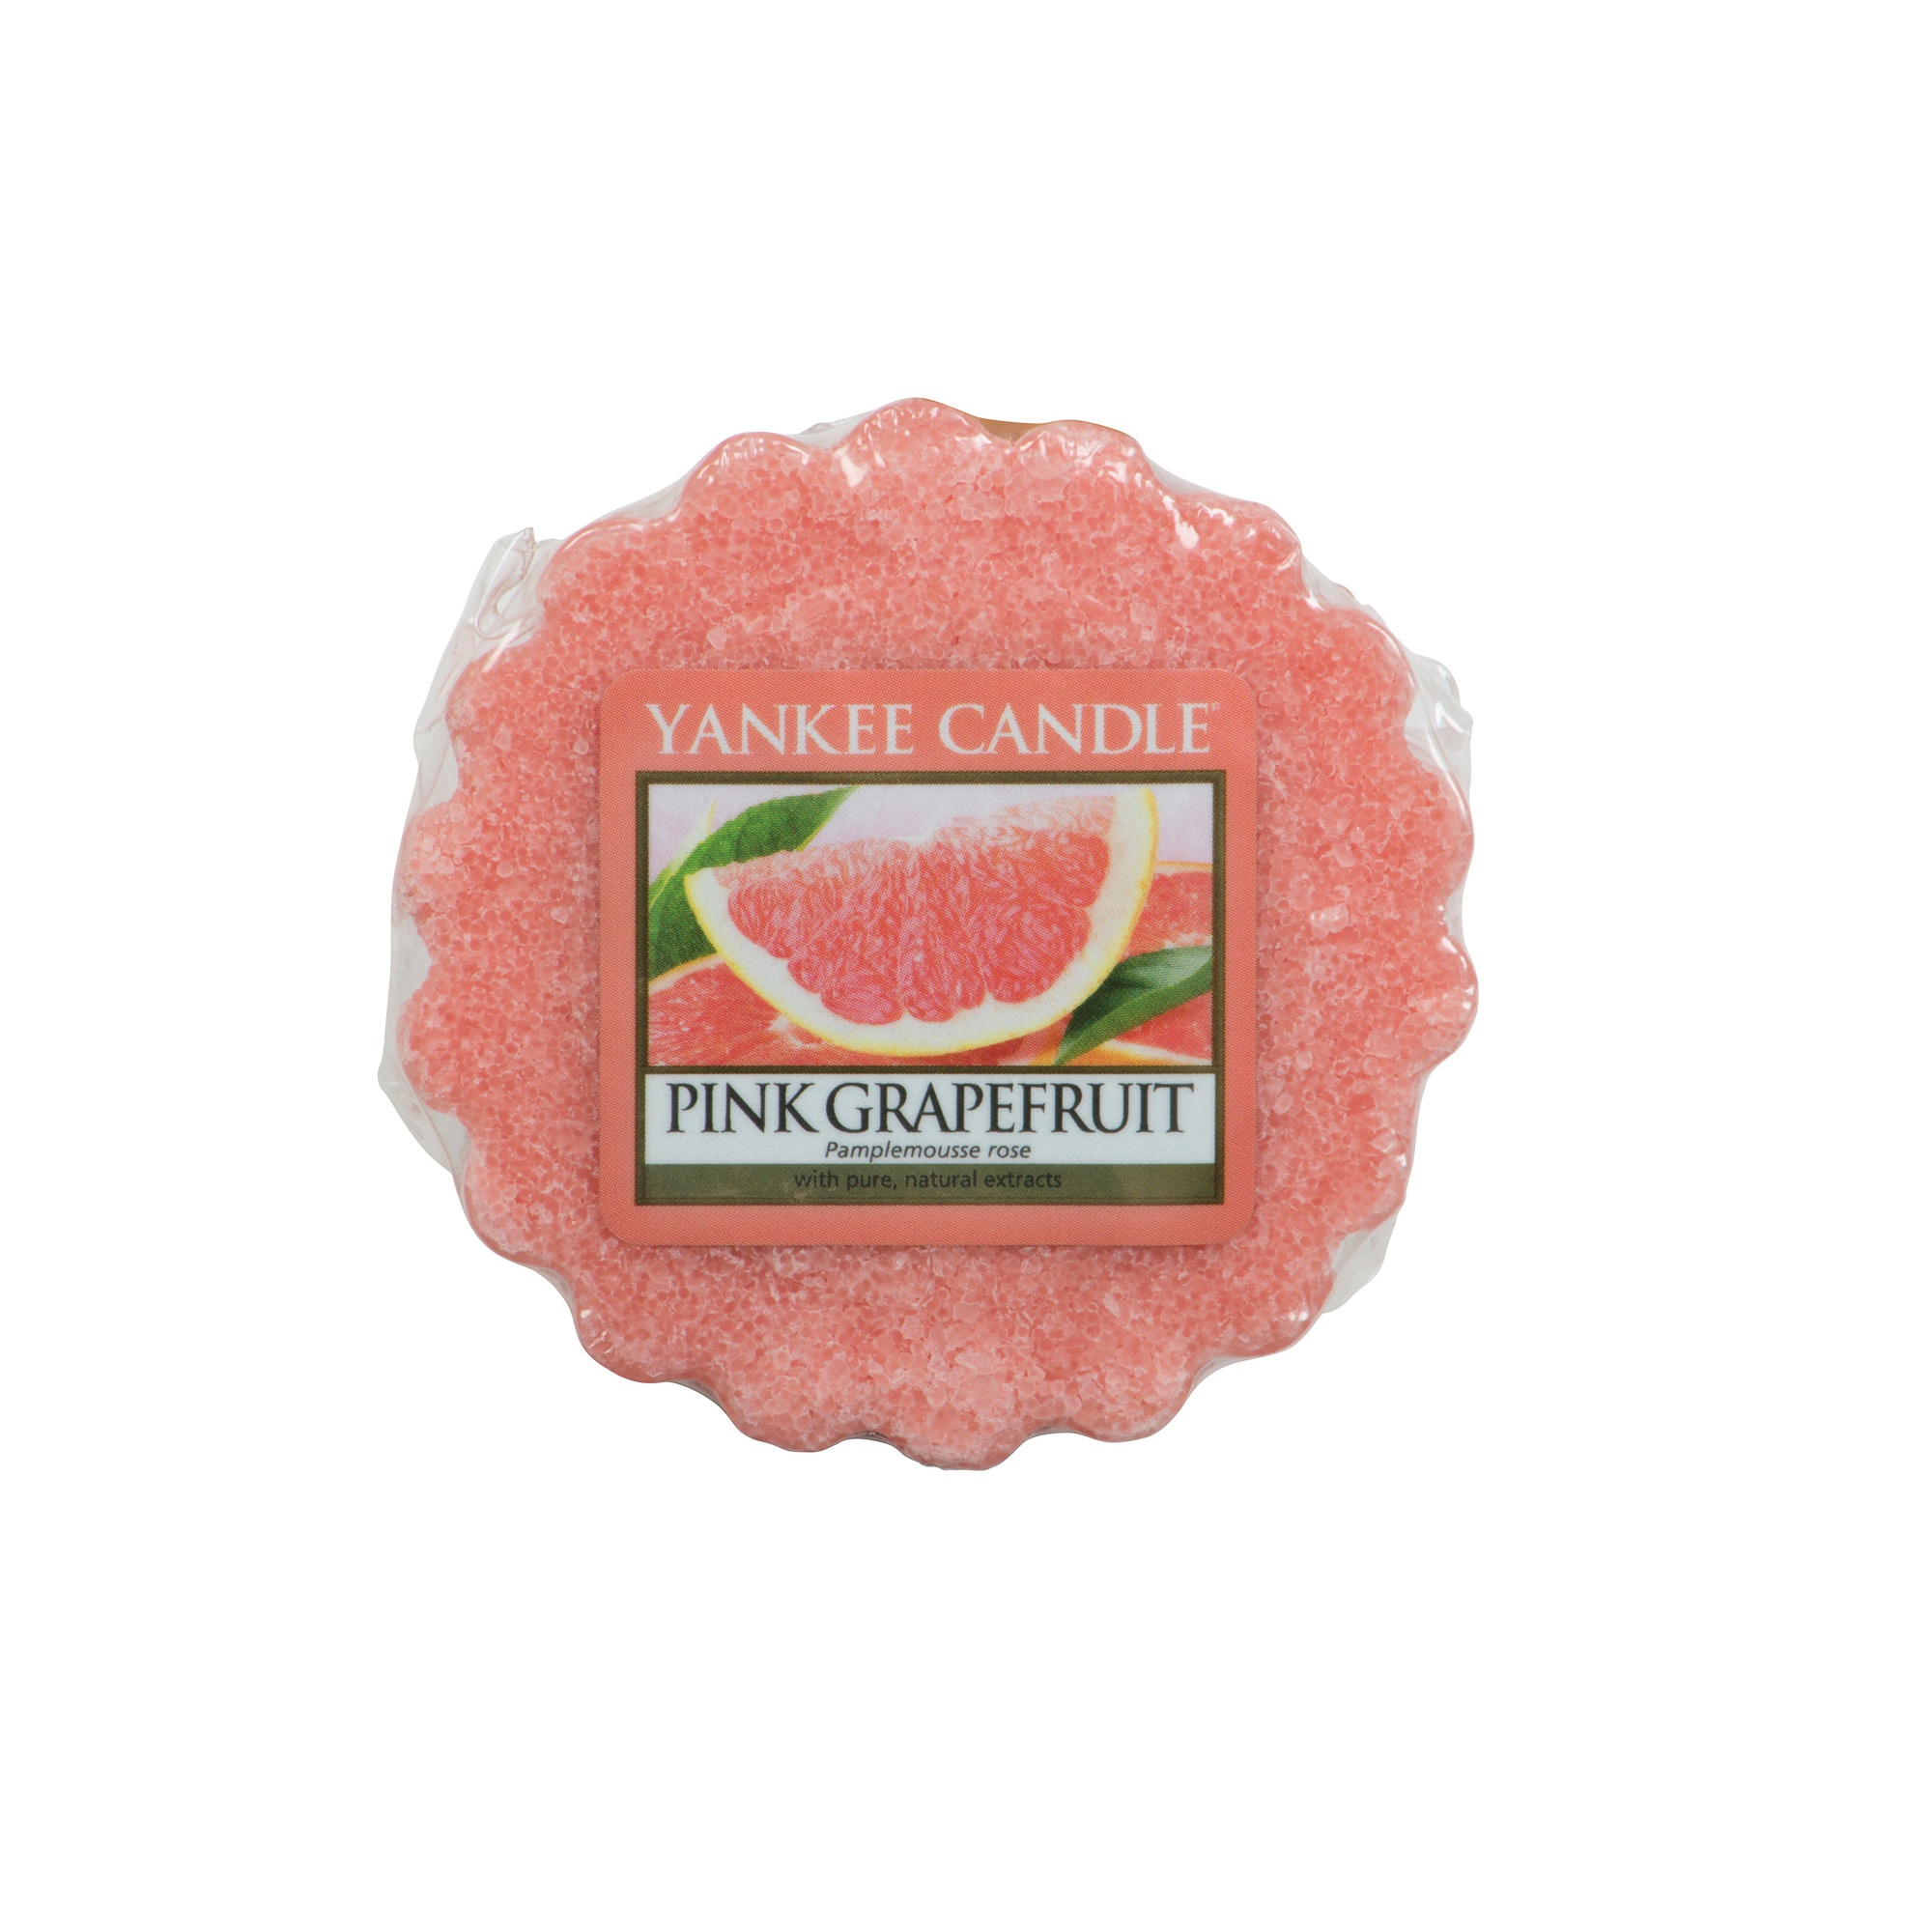 Ароматическая свеча-тарталетка Yankee candle Розовый грейпфрут 22 г восковая свеча своими руками